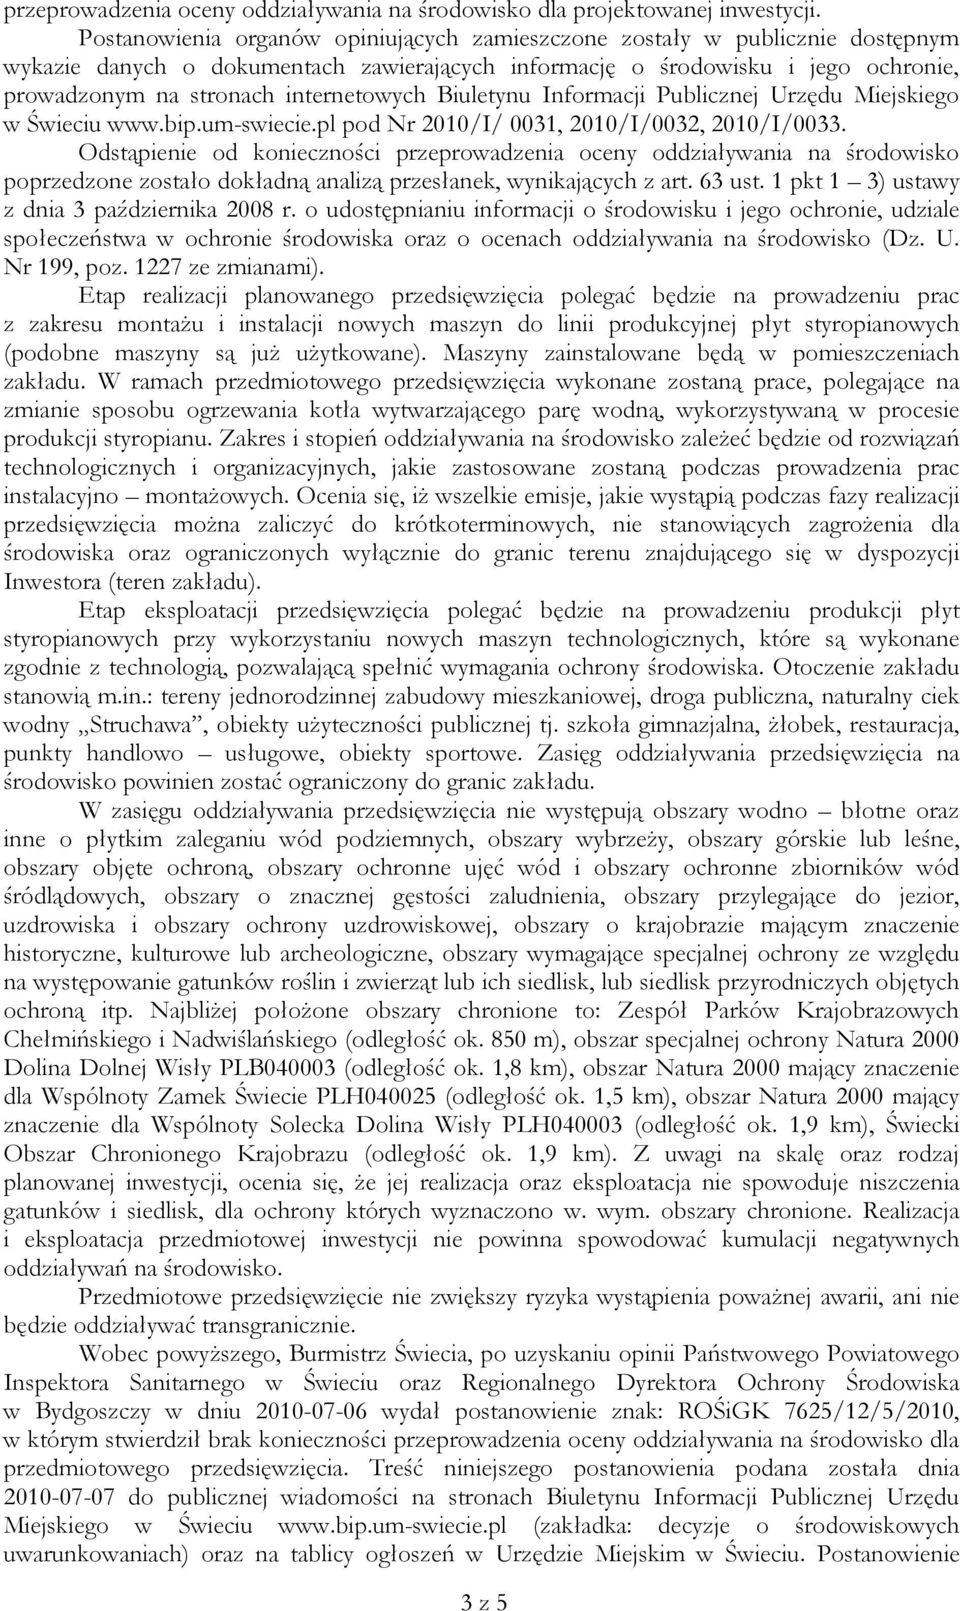 internetowych Biuletynu Informacji Publicznej Urzędu Miejskiego w Świeciu www.bip.um-swiecie.pl pod Nr 2010/I/ 0031, 2010/I/0032, 2010/I/0033.